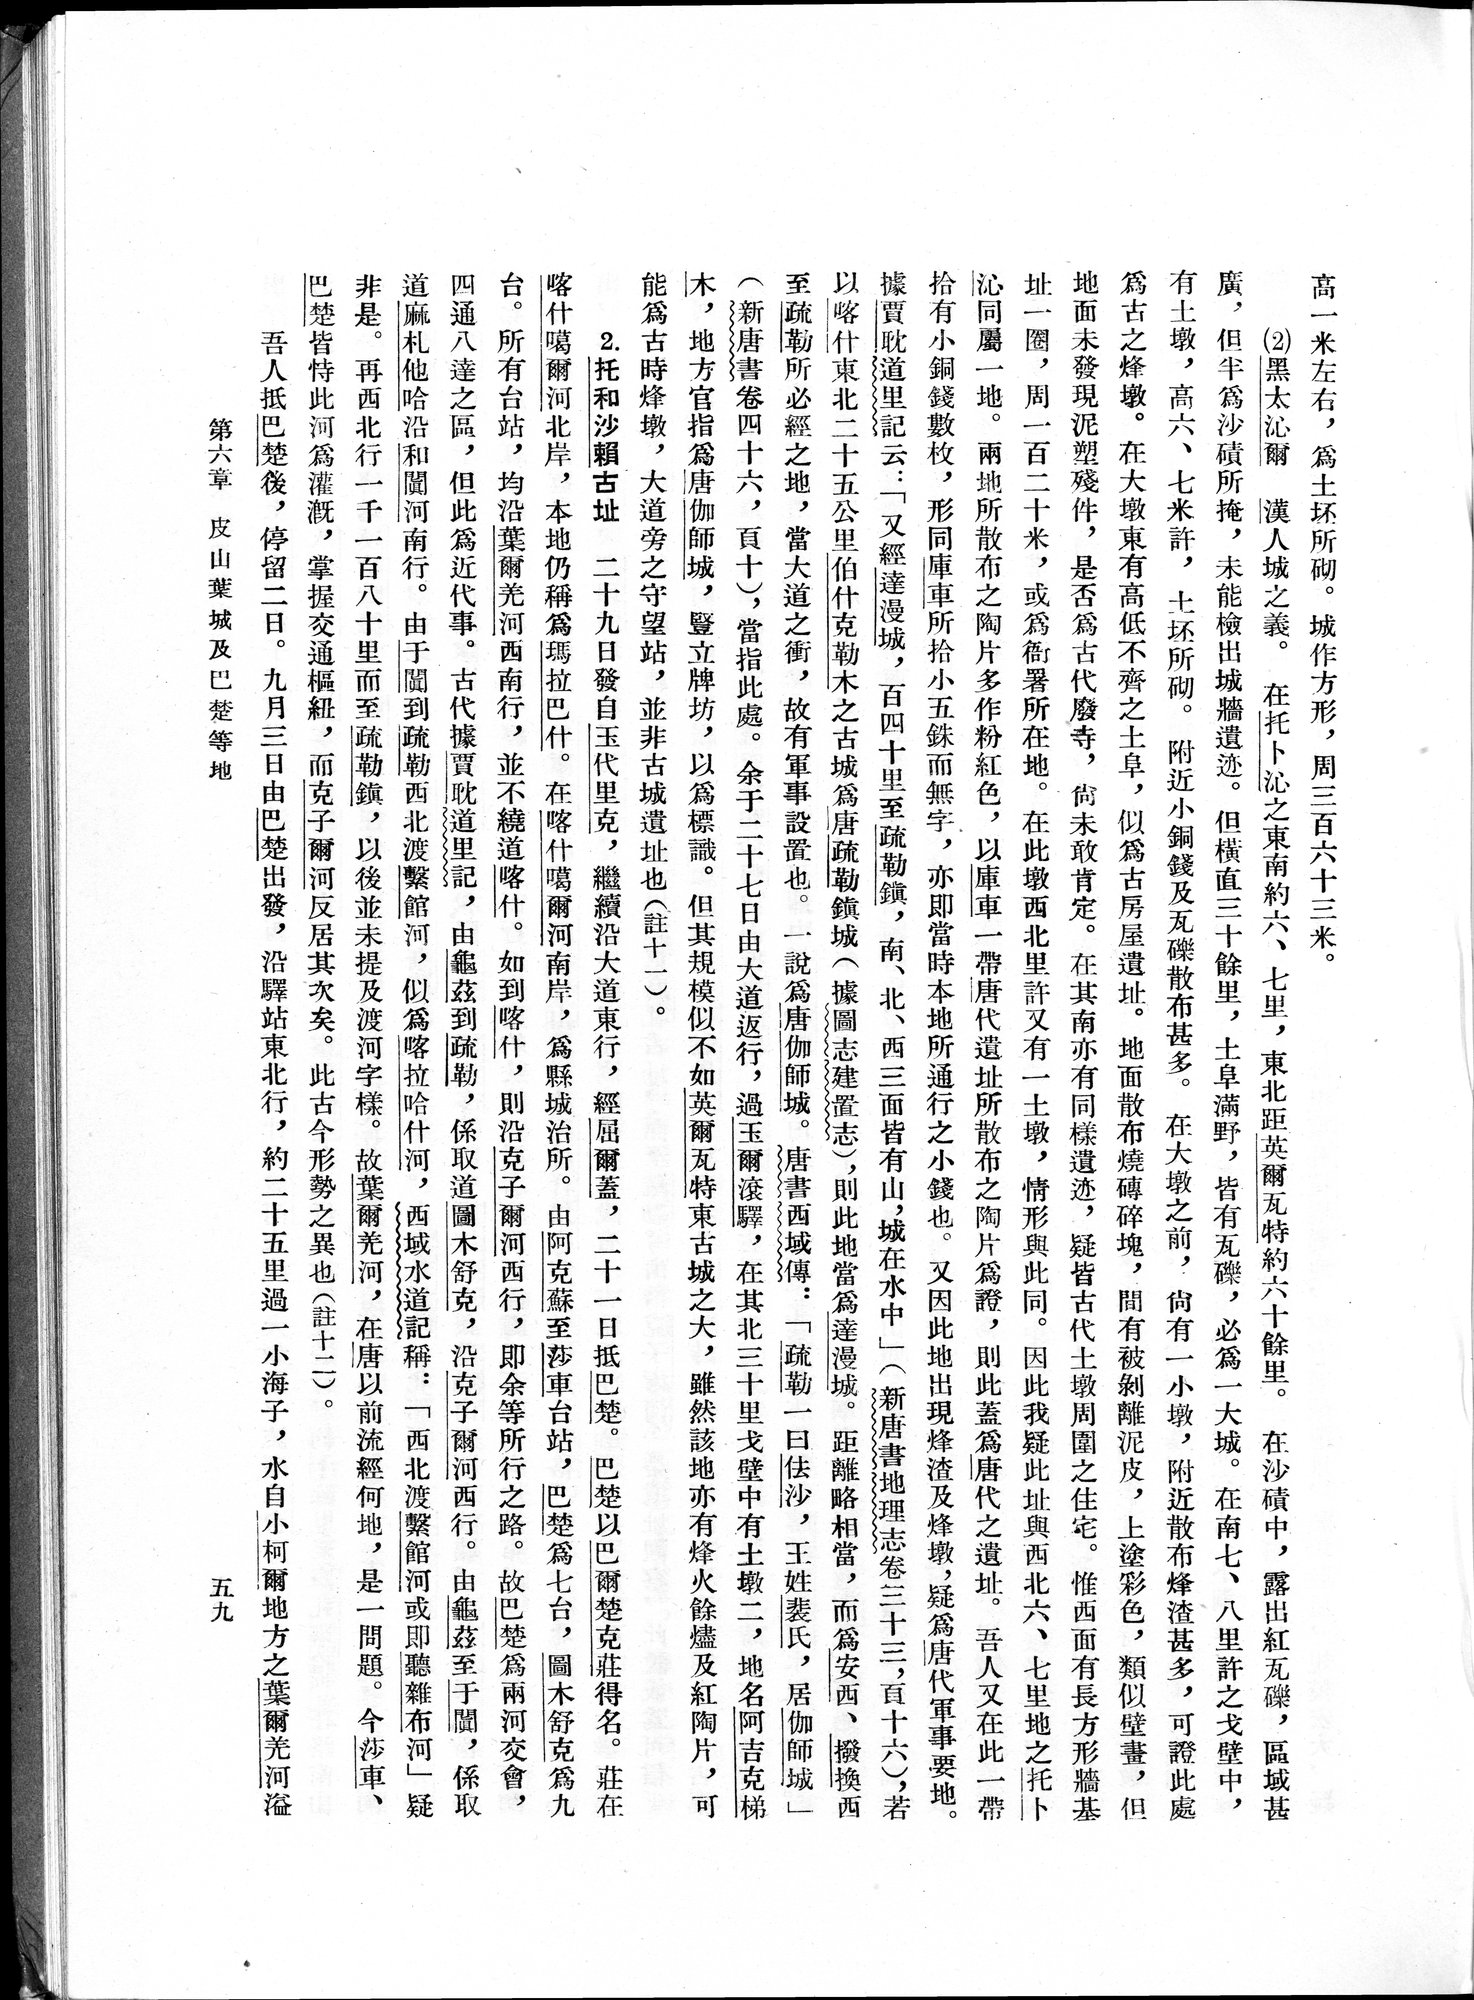 塔里木盆地考古記 : vol.1 / Page 83 (Grayscale High Resolution Image)